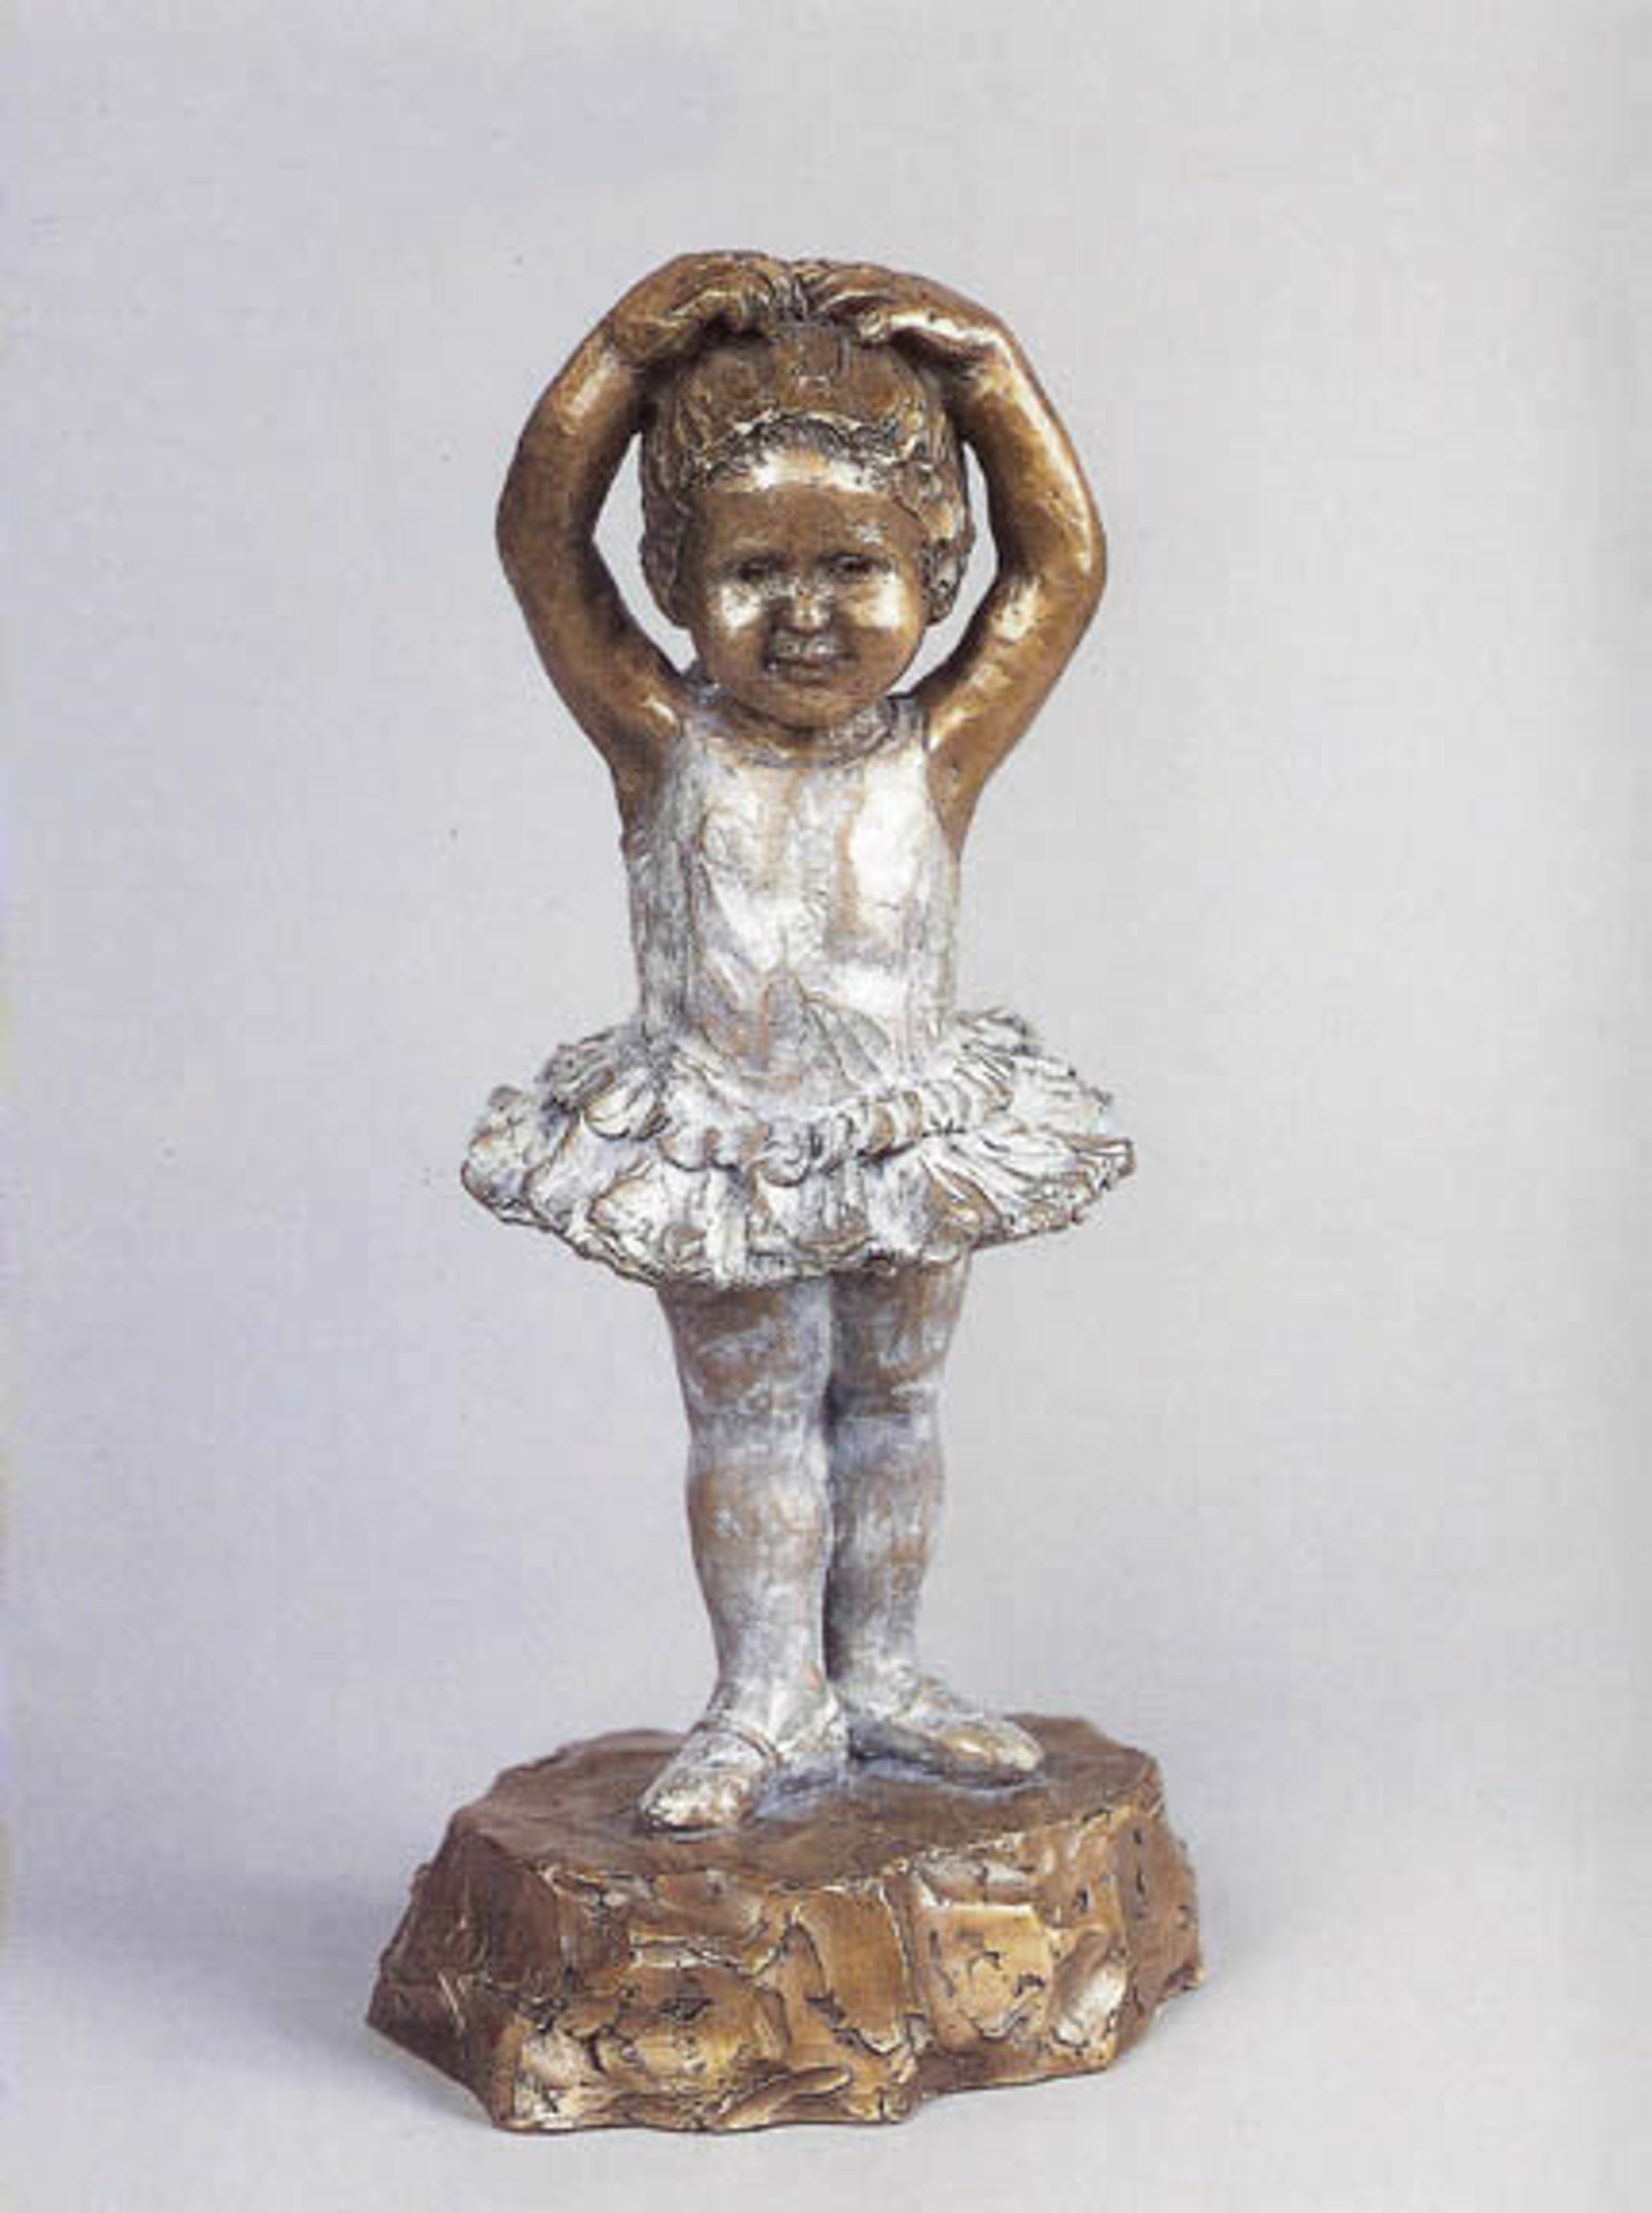 Little Ballerina by Corinne Hartley Sculpture